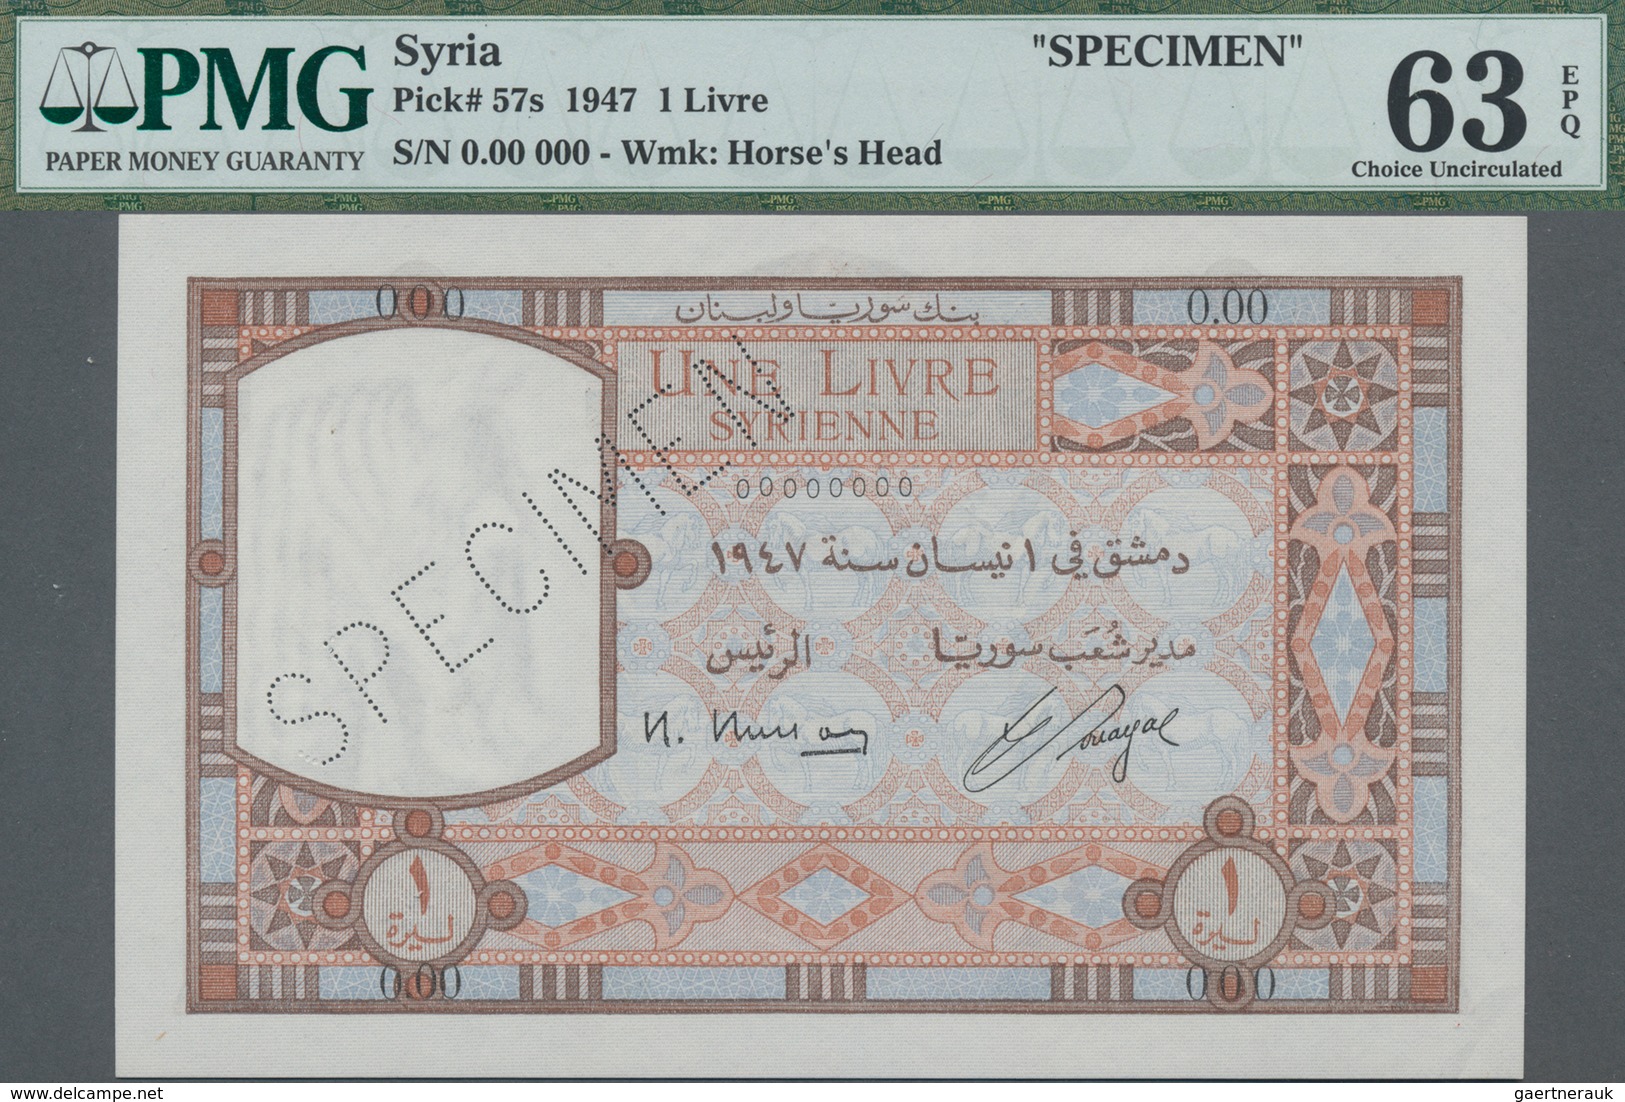 Syria / Syrien: Banque De Syrie Et Du Liban 1 Livre 1947 SPECIMEN, P.57s With Perforation "Specimen" - Syrie